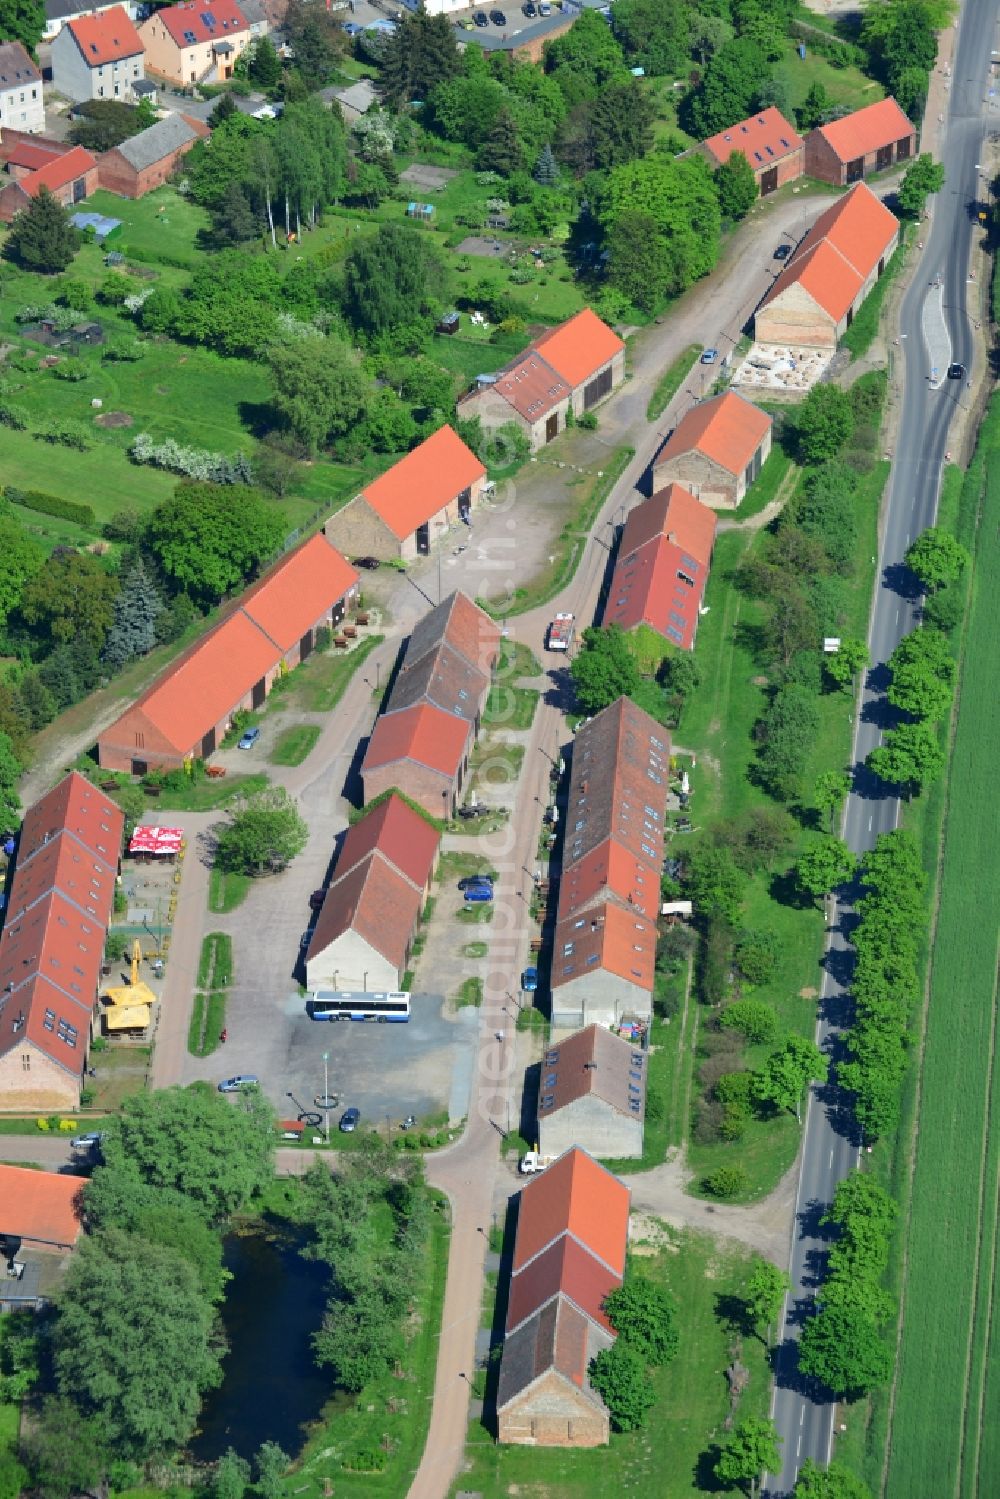 Kremmen from the bird's eye view: Sheds - quarters of the small town of Kremmen in the state of Brandenburg Kremmen